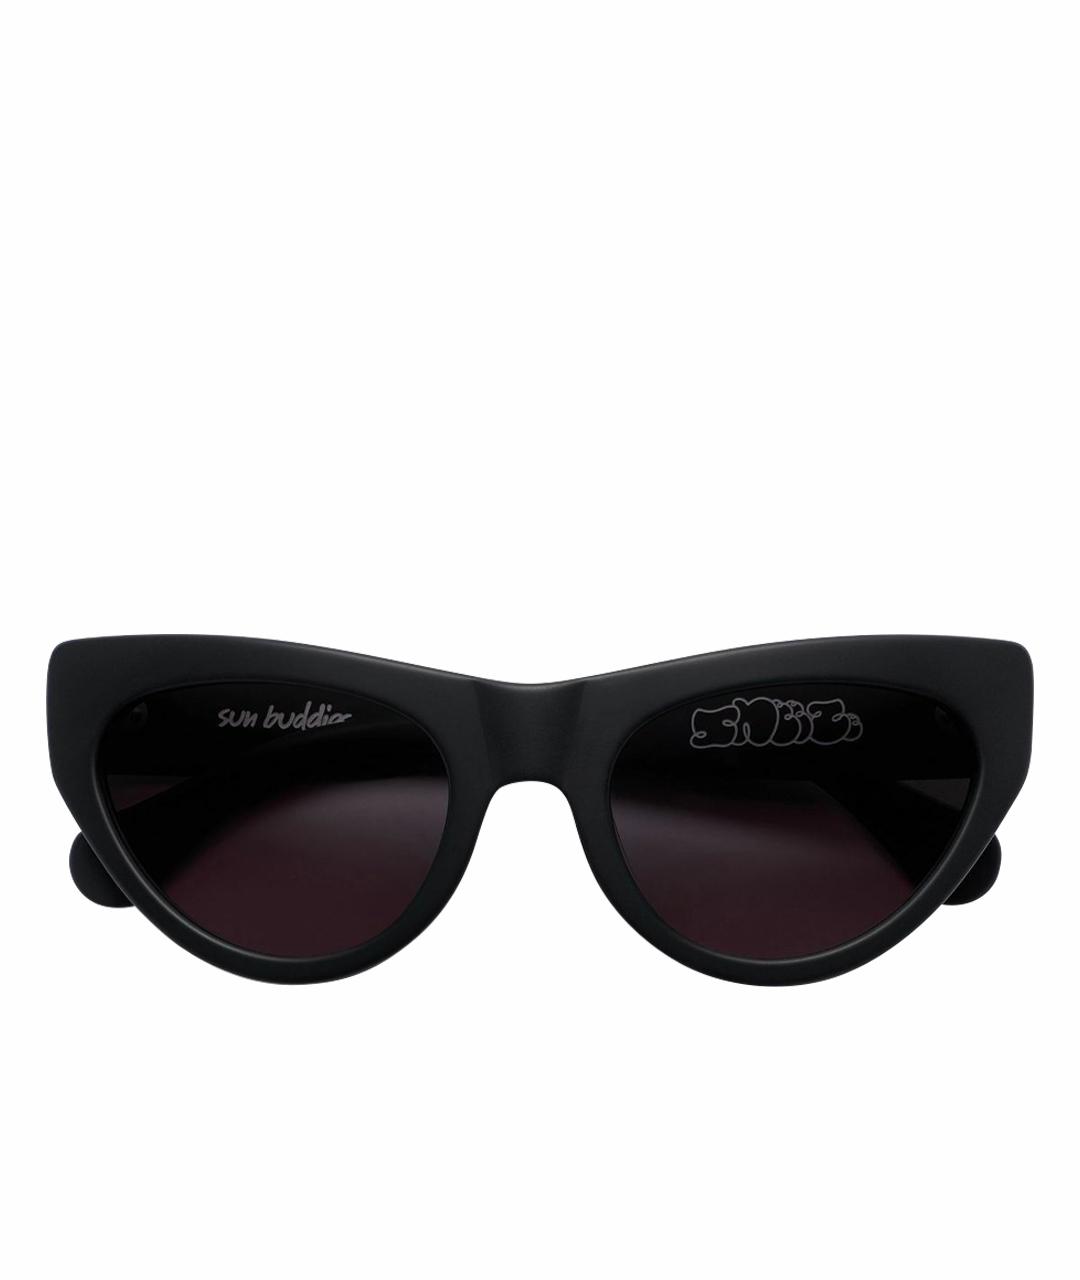 SUN BUDDIES Черные солнцезащитные очки, фото 1